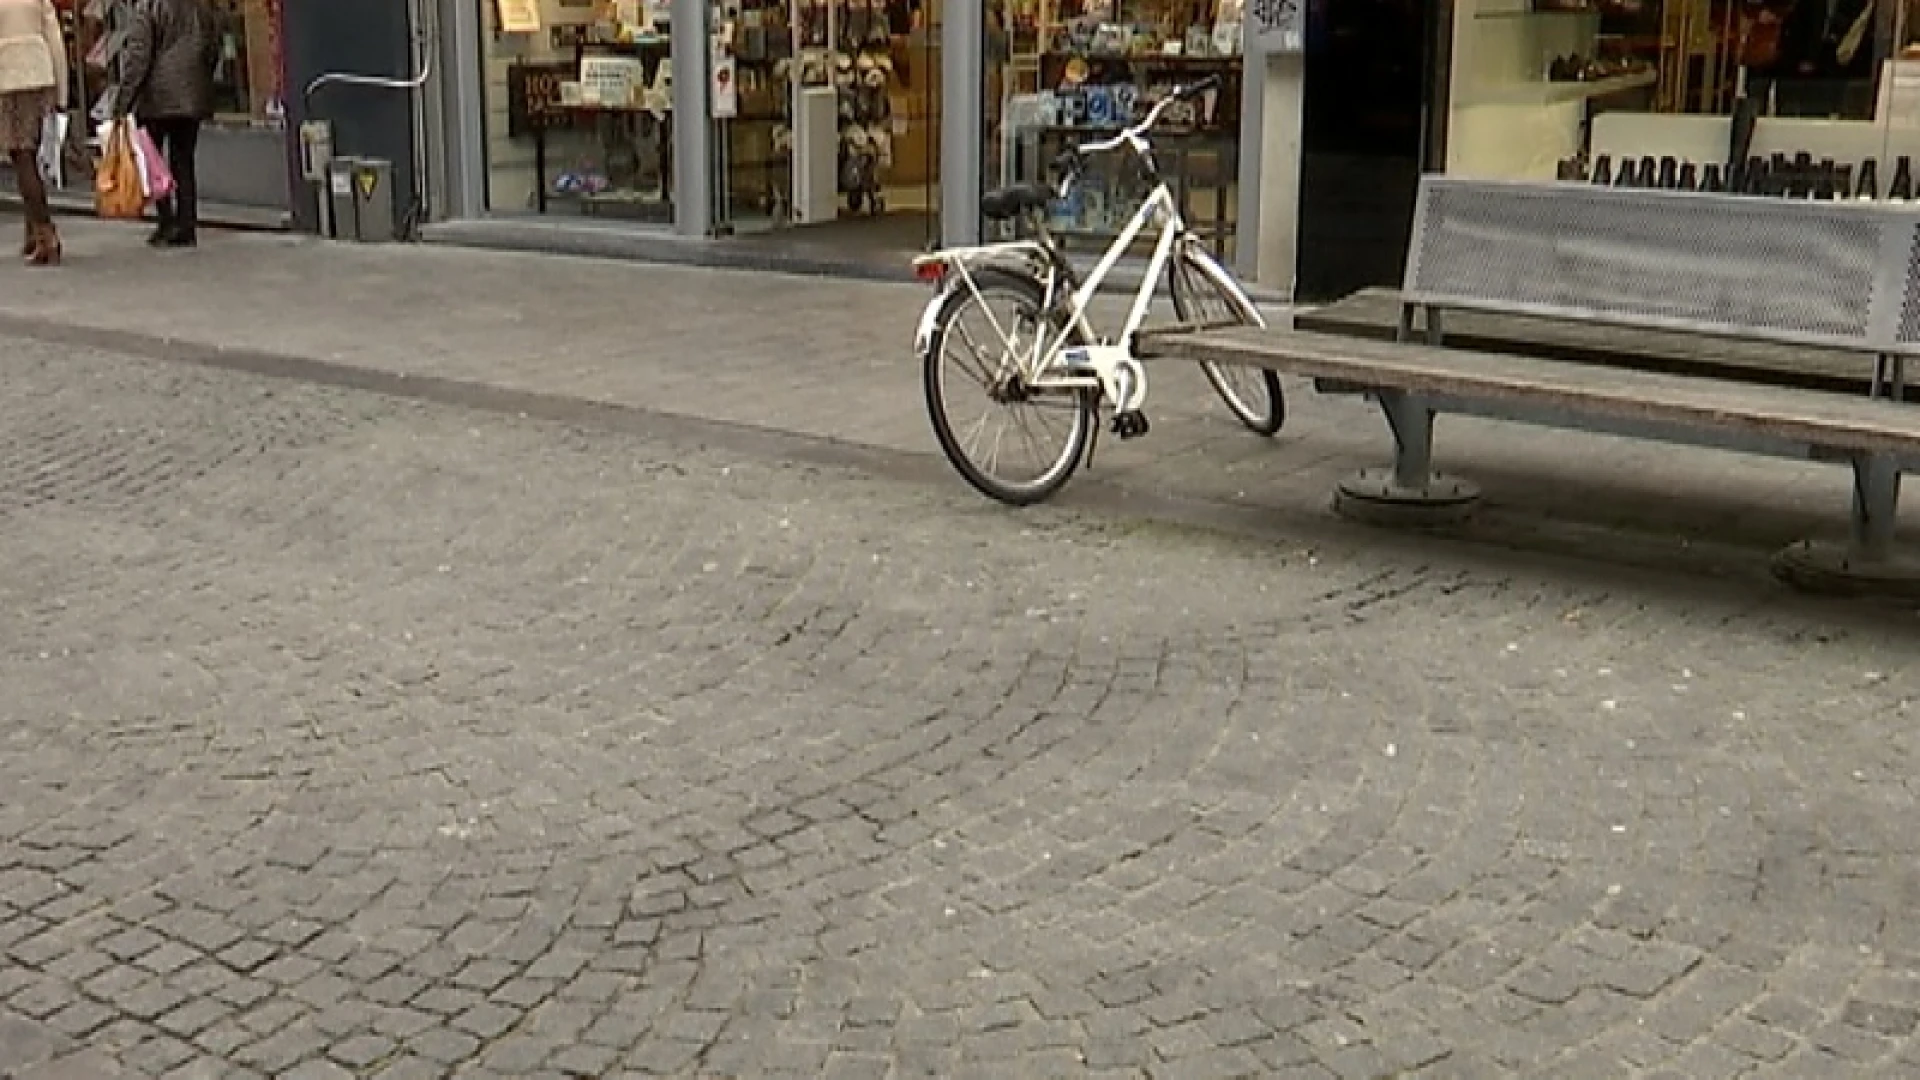 Meer mannen op straat in Leuven na invoering circulatieplan